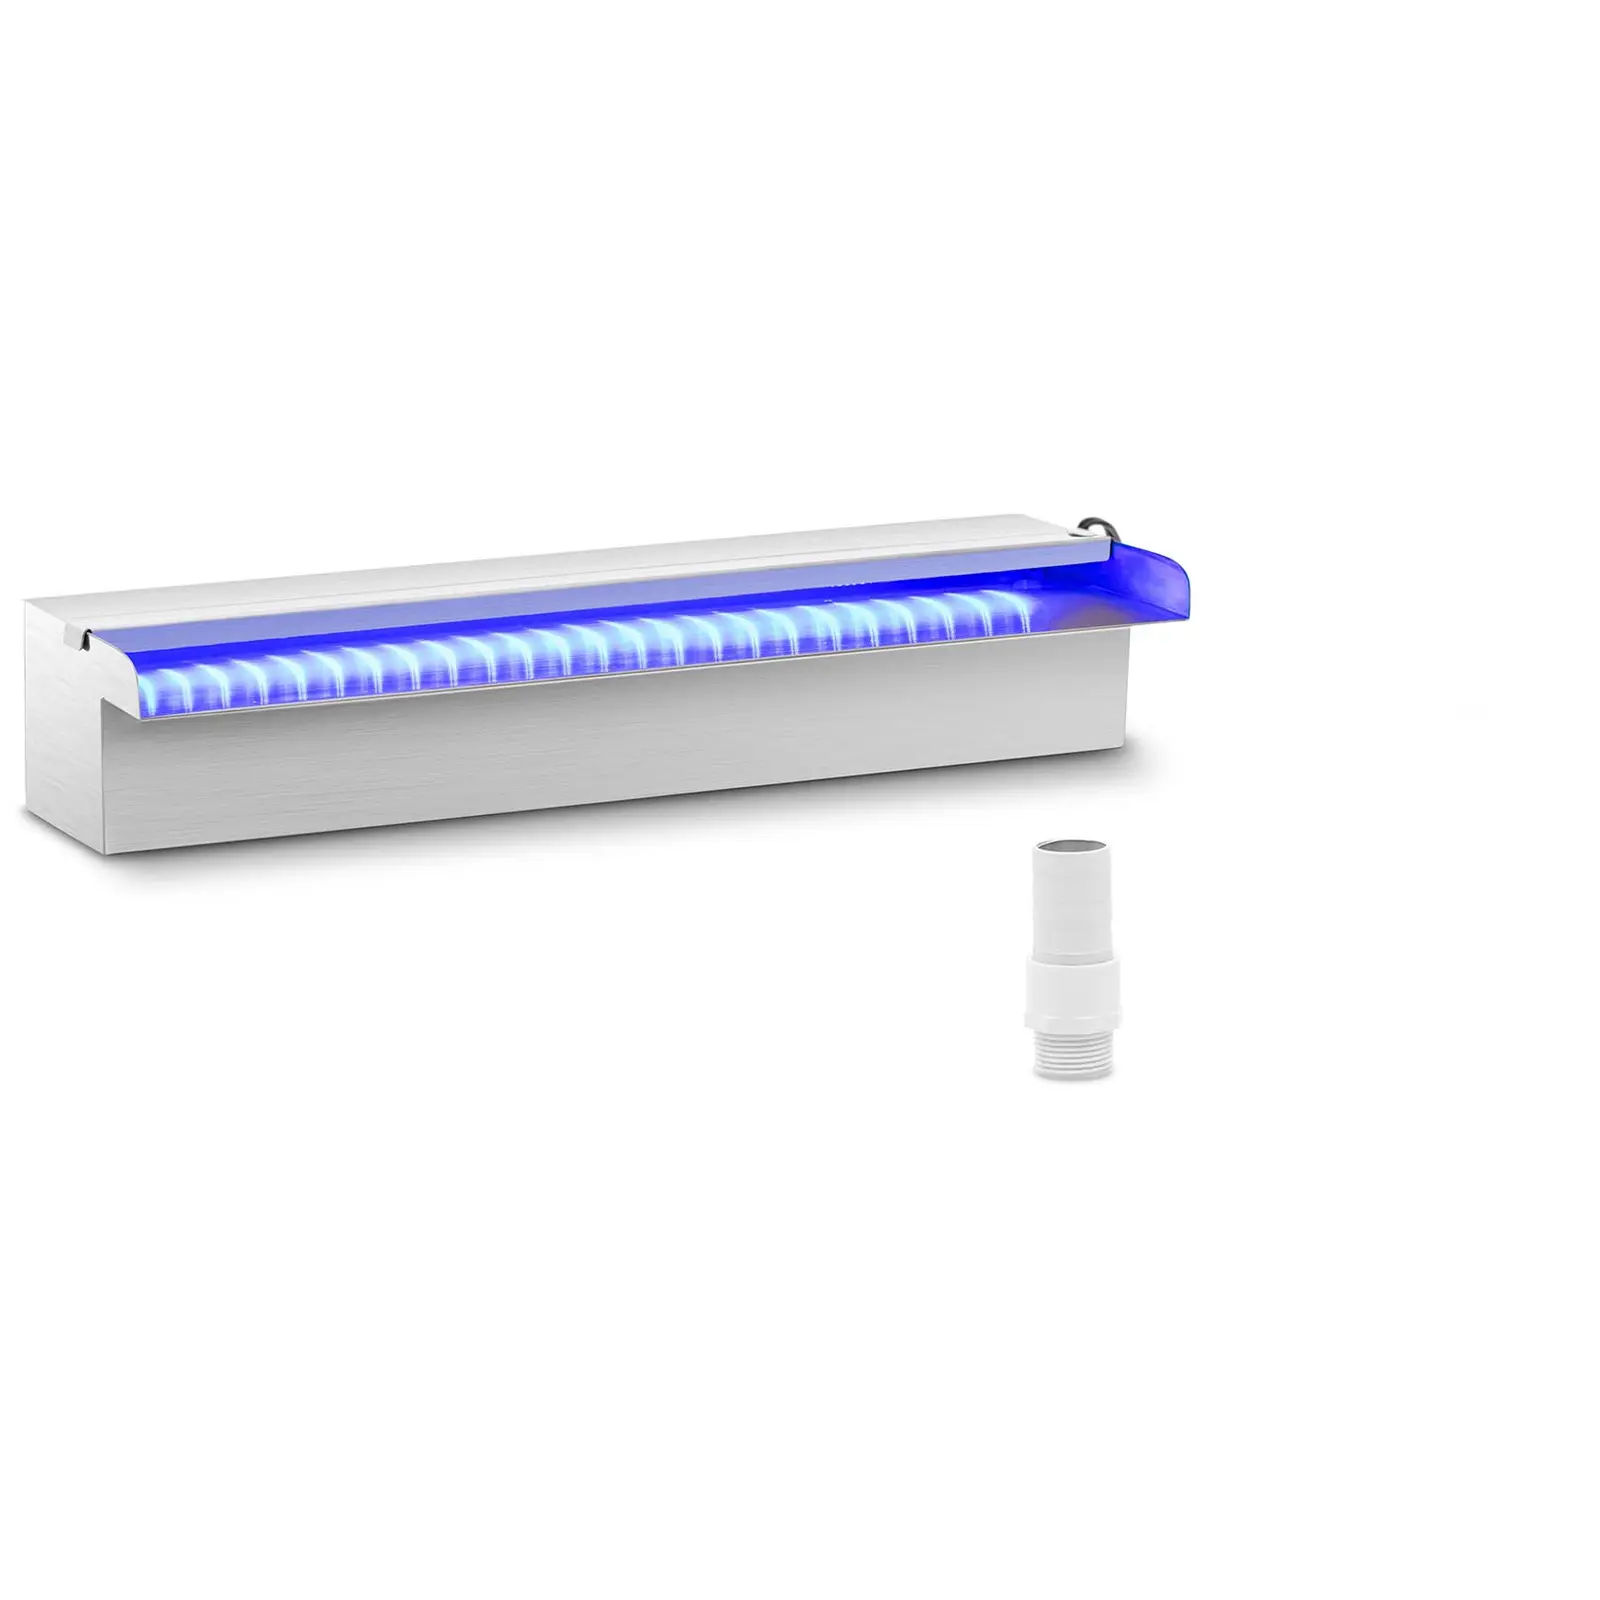 Chrlič vody 45 cm LED osvětlení modrá/bílá otevřený vývod vody - Chrliče vody Uniprodo